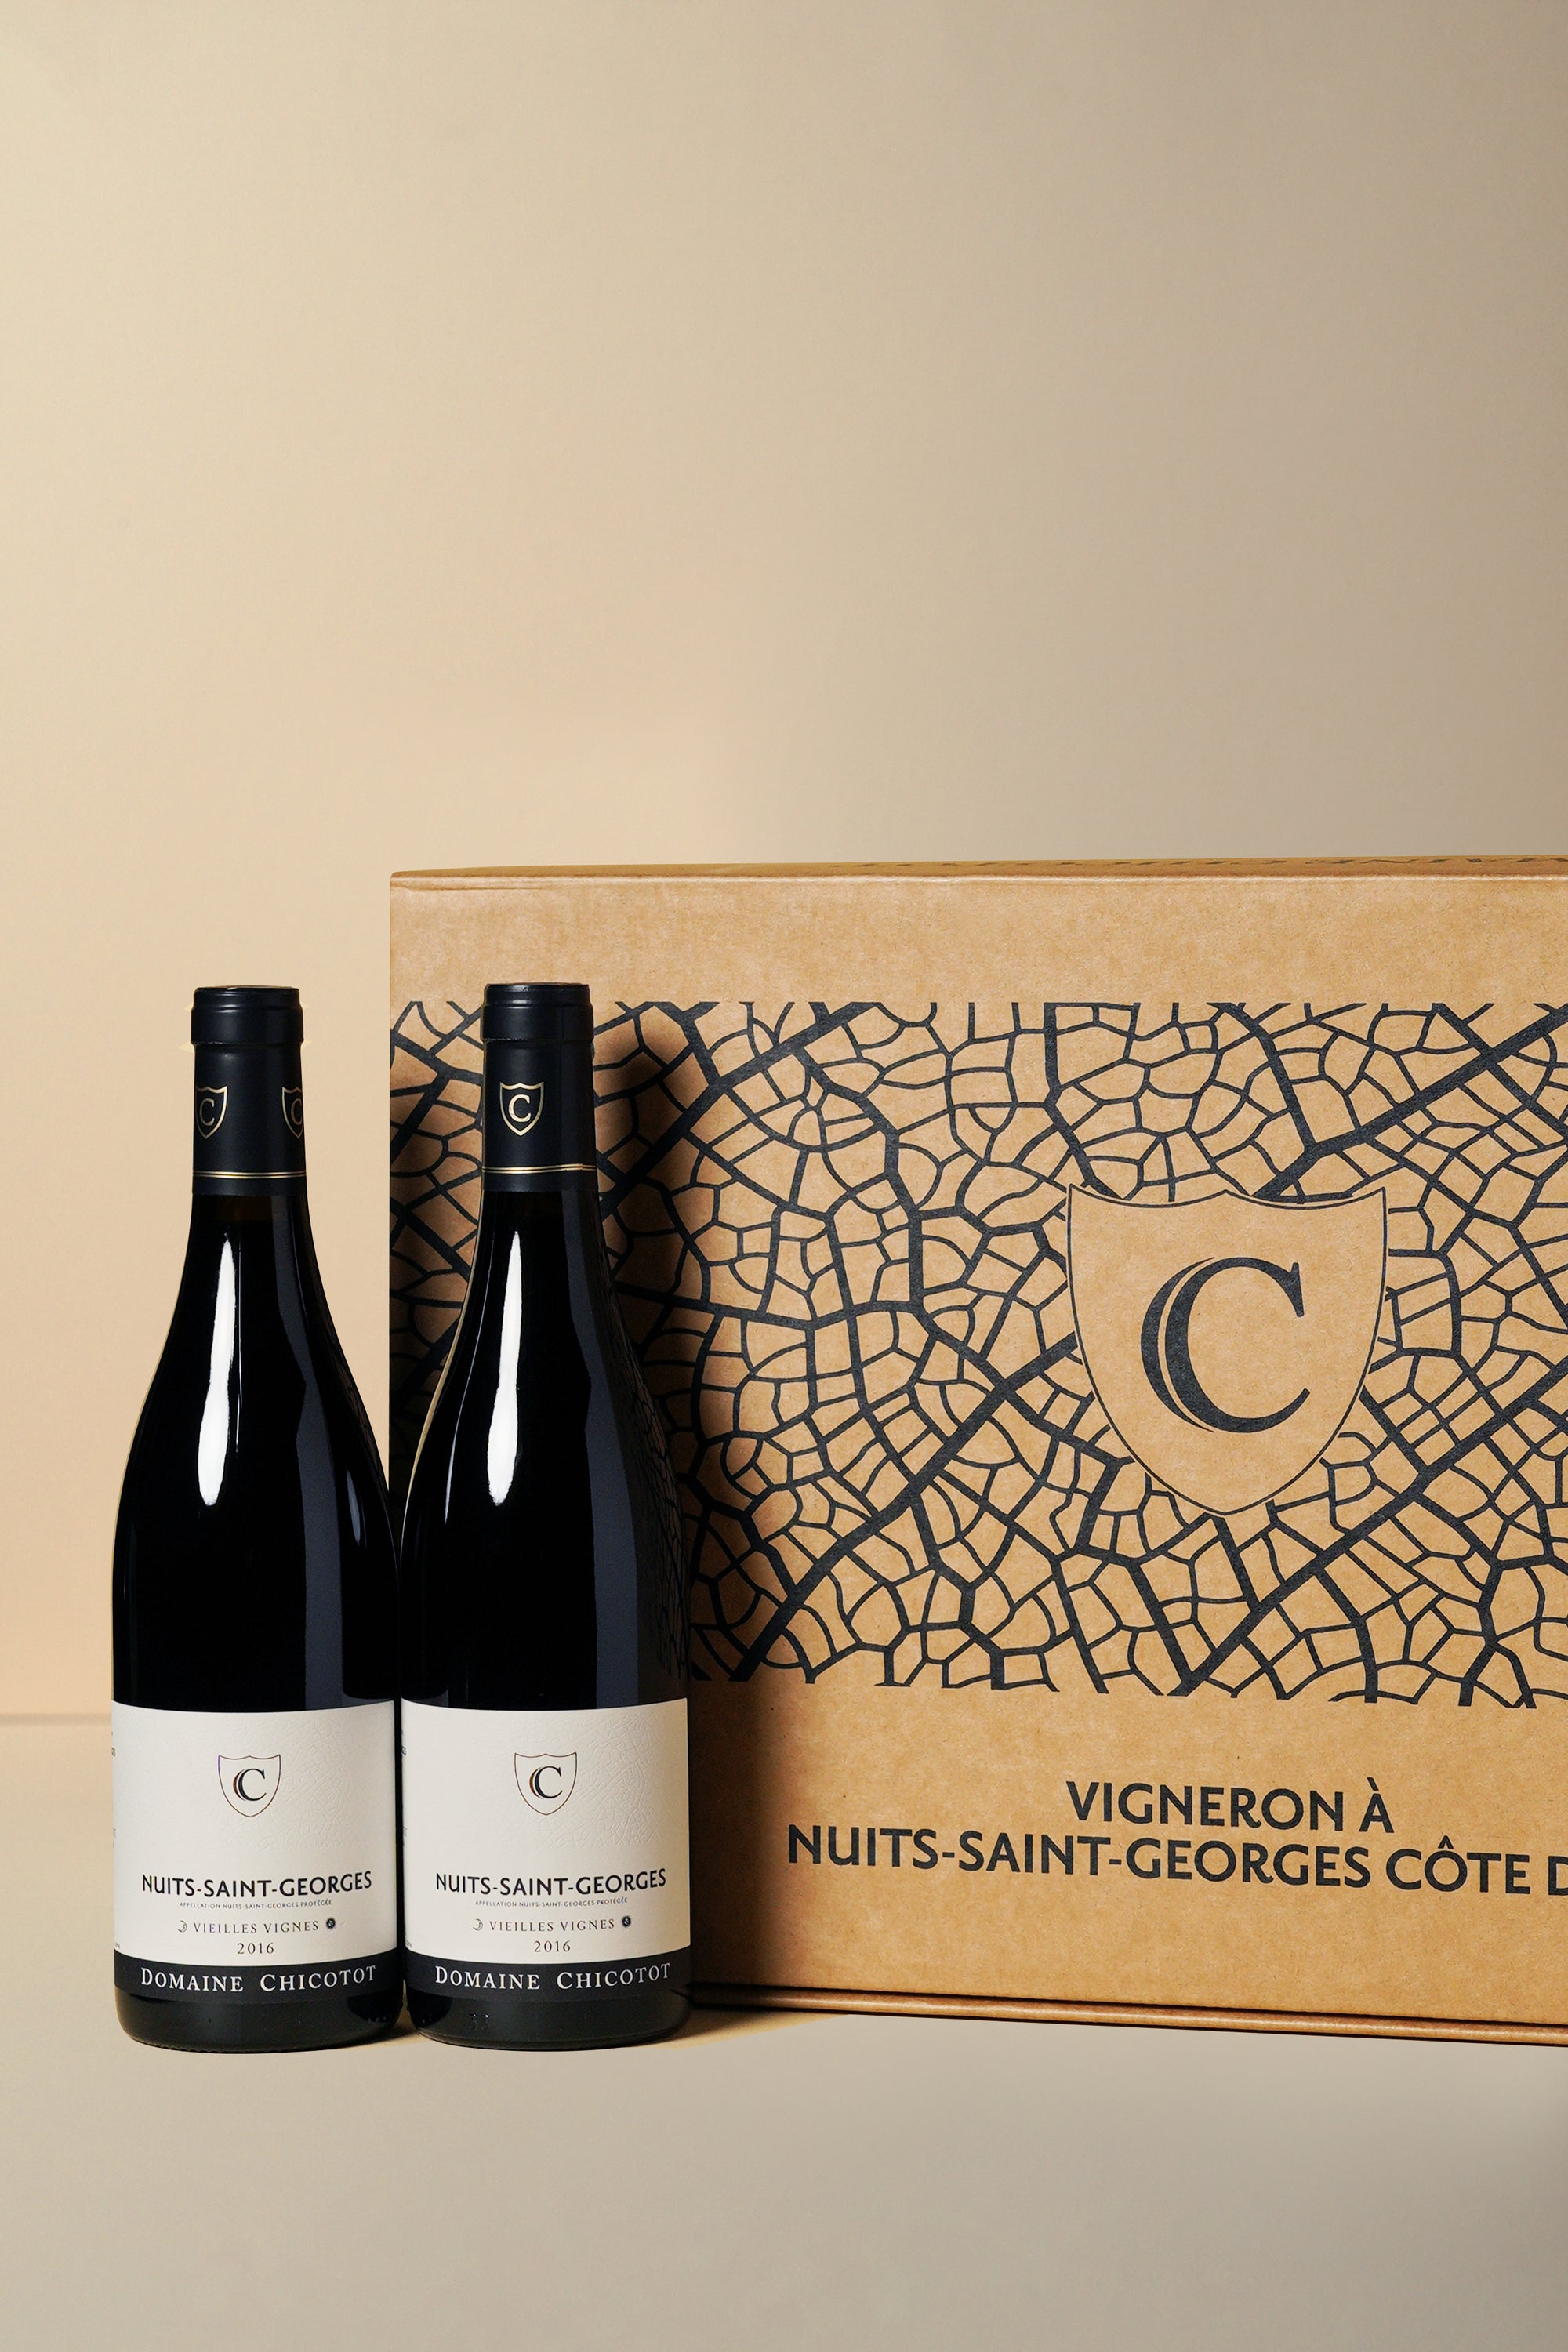 Chicotot, Nuits St Georges Vieilles Vignes 2016 (OCC of 6 bottles)